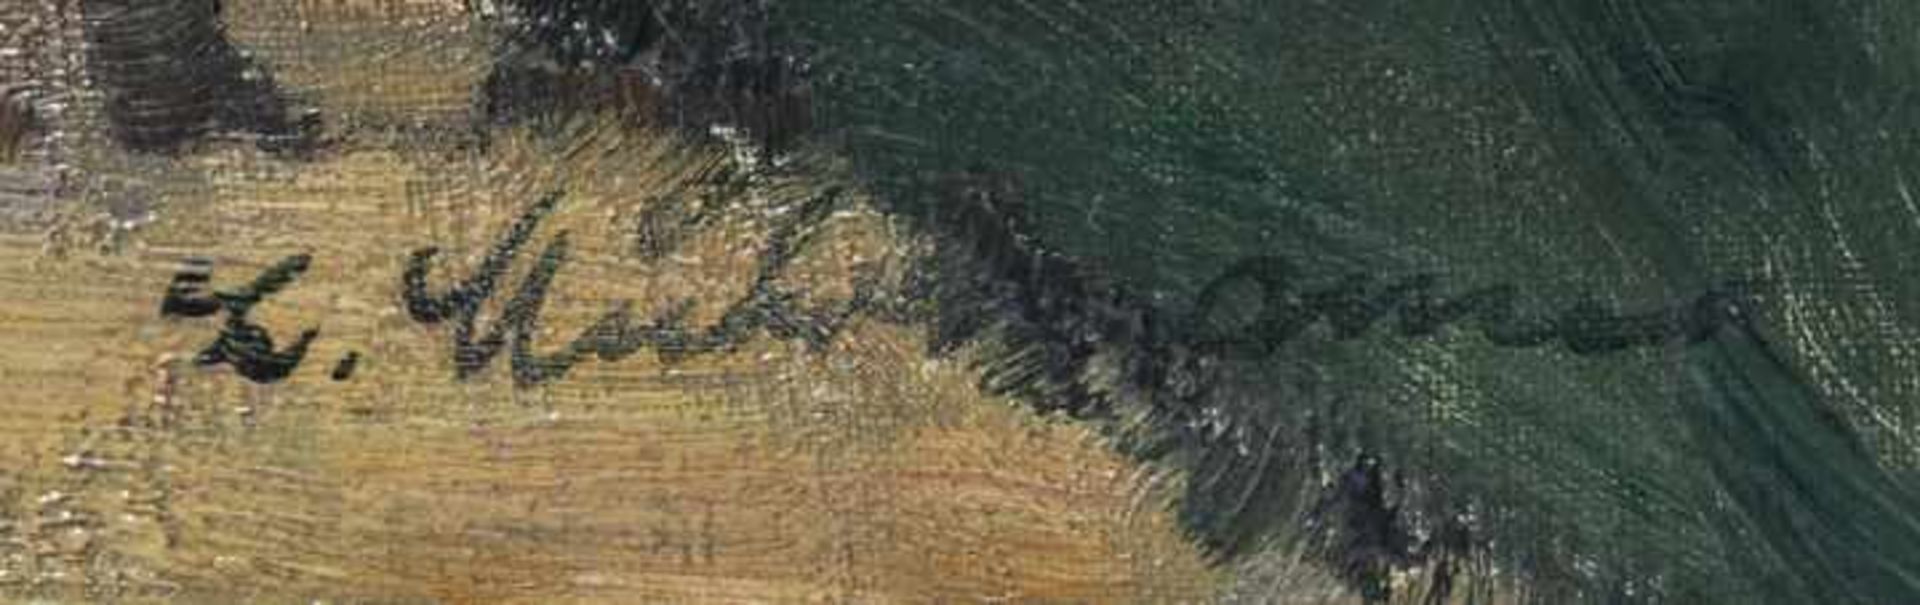 Muhrmann, LudwigStillleben mit Früchten und Tauben. Öl auf Leinwand, li. u. sign. 60,5 x 81 cm. - Bild 5 aus 8